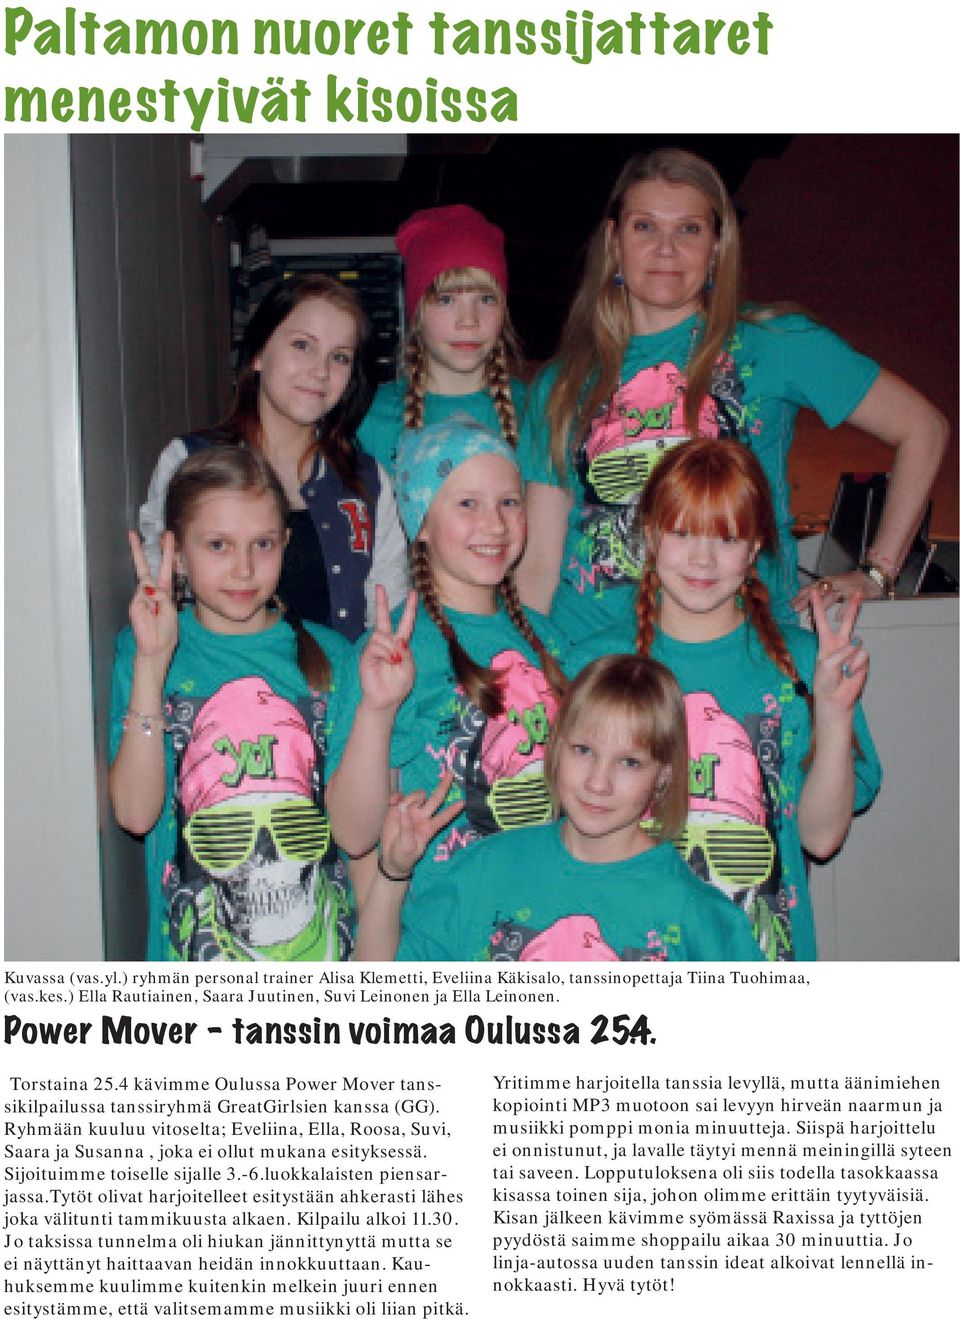 4 kävimme Oulussa Power Mover tanssikilpailussa tanssiryhmä GreatGirlsien kanssa (GG). Ryhmään kuuluu vitoselta; Eveliina, Ella, Roosa, Suvi, Saara ja Susanna, joka ei ollut mukana esityksessä.